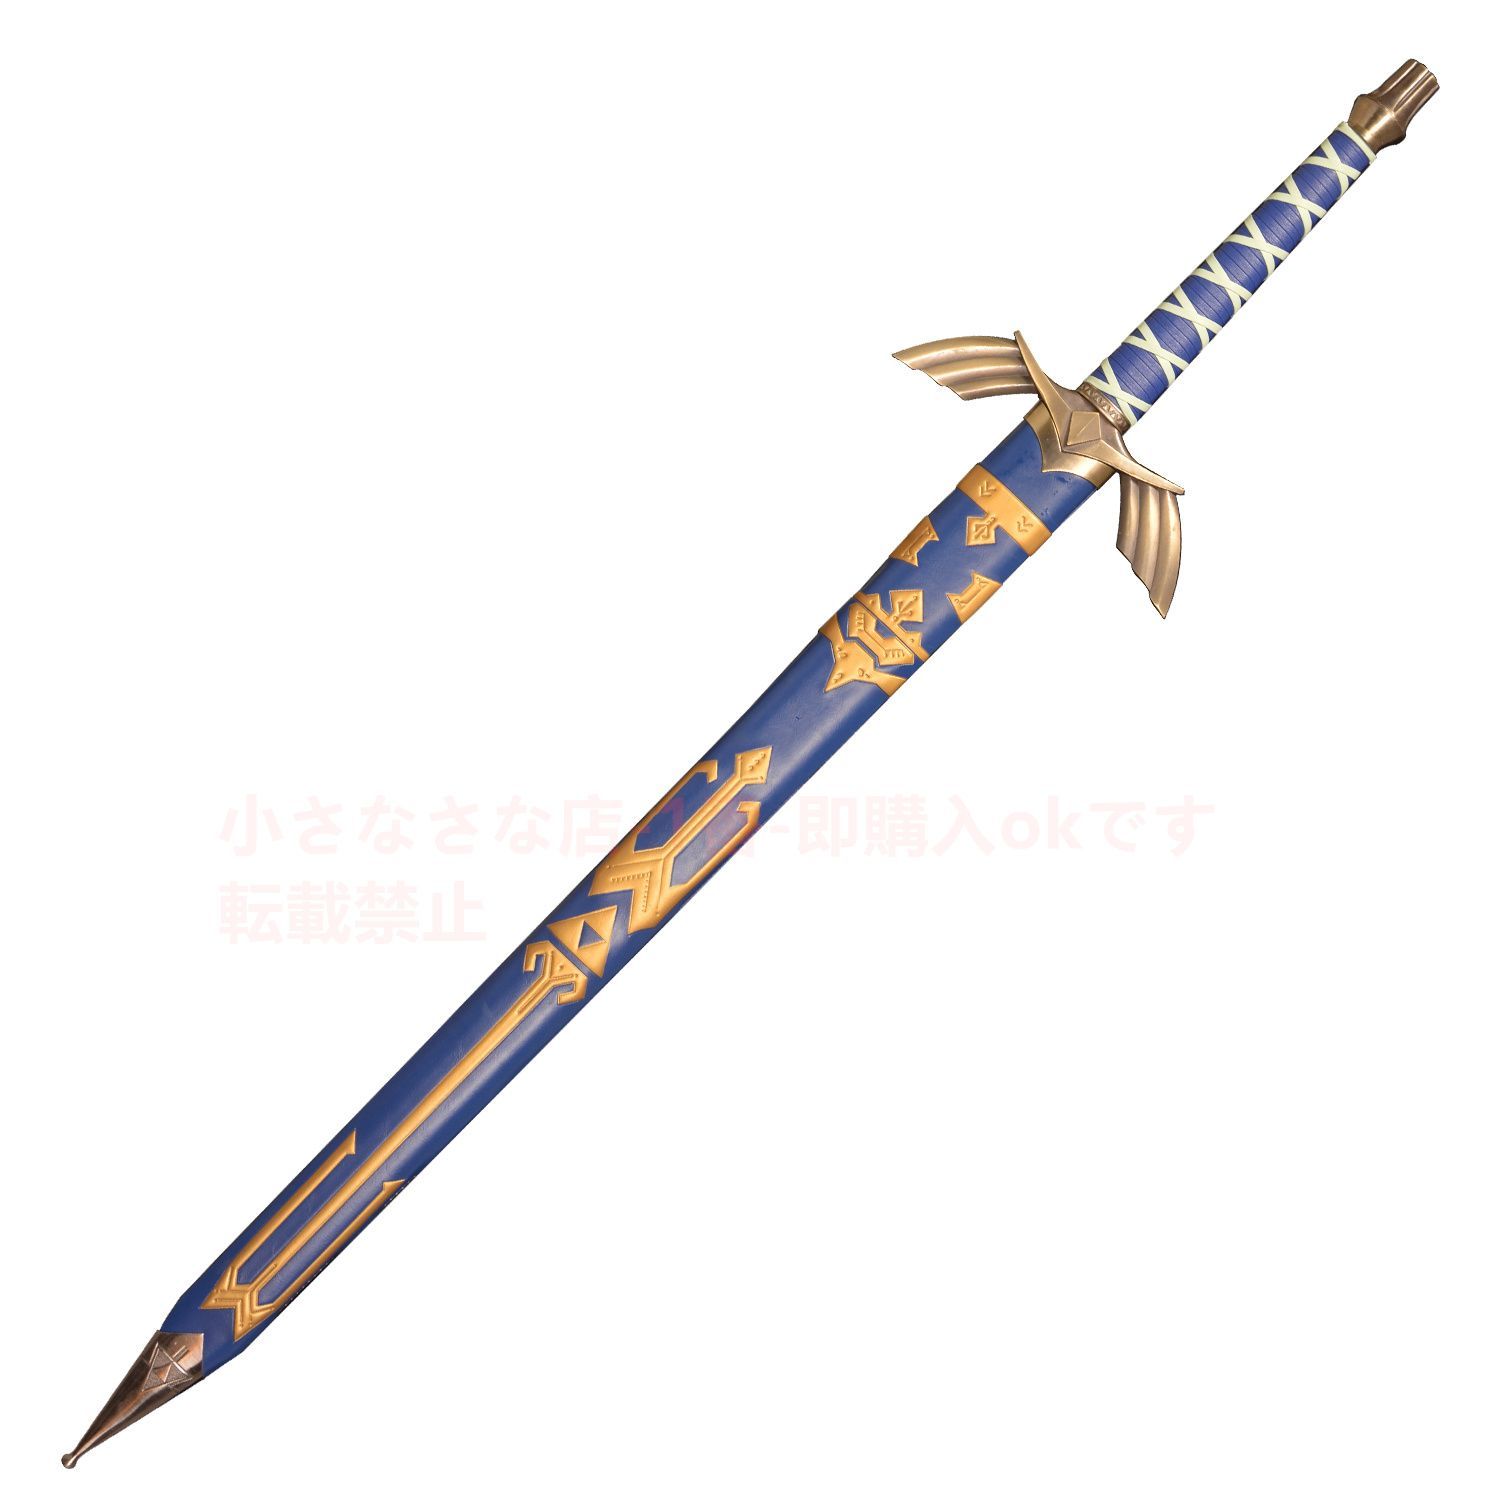 ゼルダの伝説王国の涙ゼルダの剣A 5 古兵器 武具　刀装具日本刀 模造刀·模擬刀キングダム